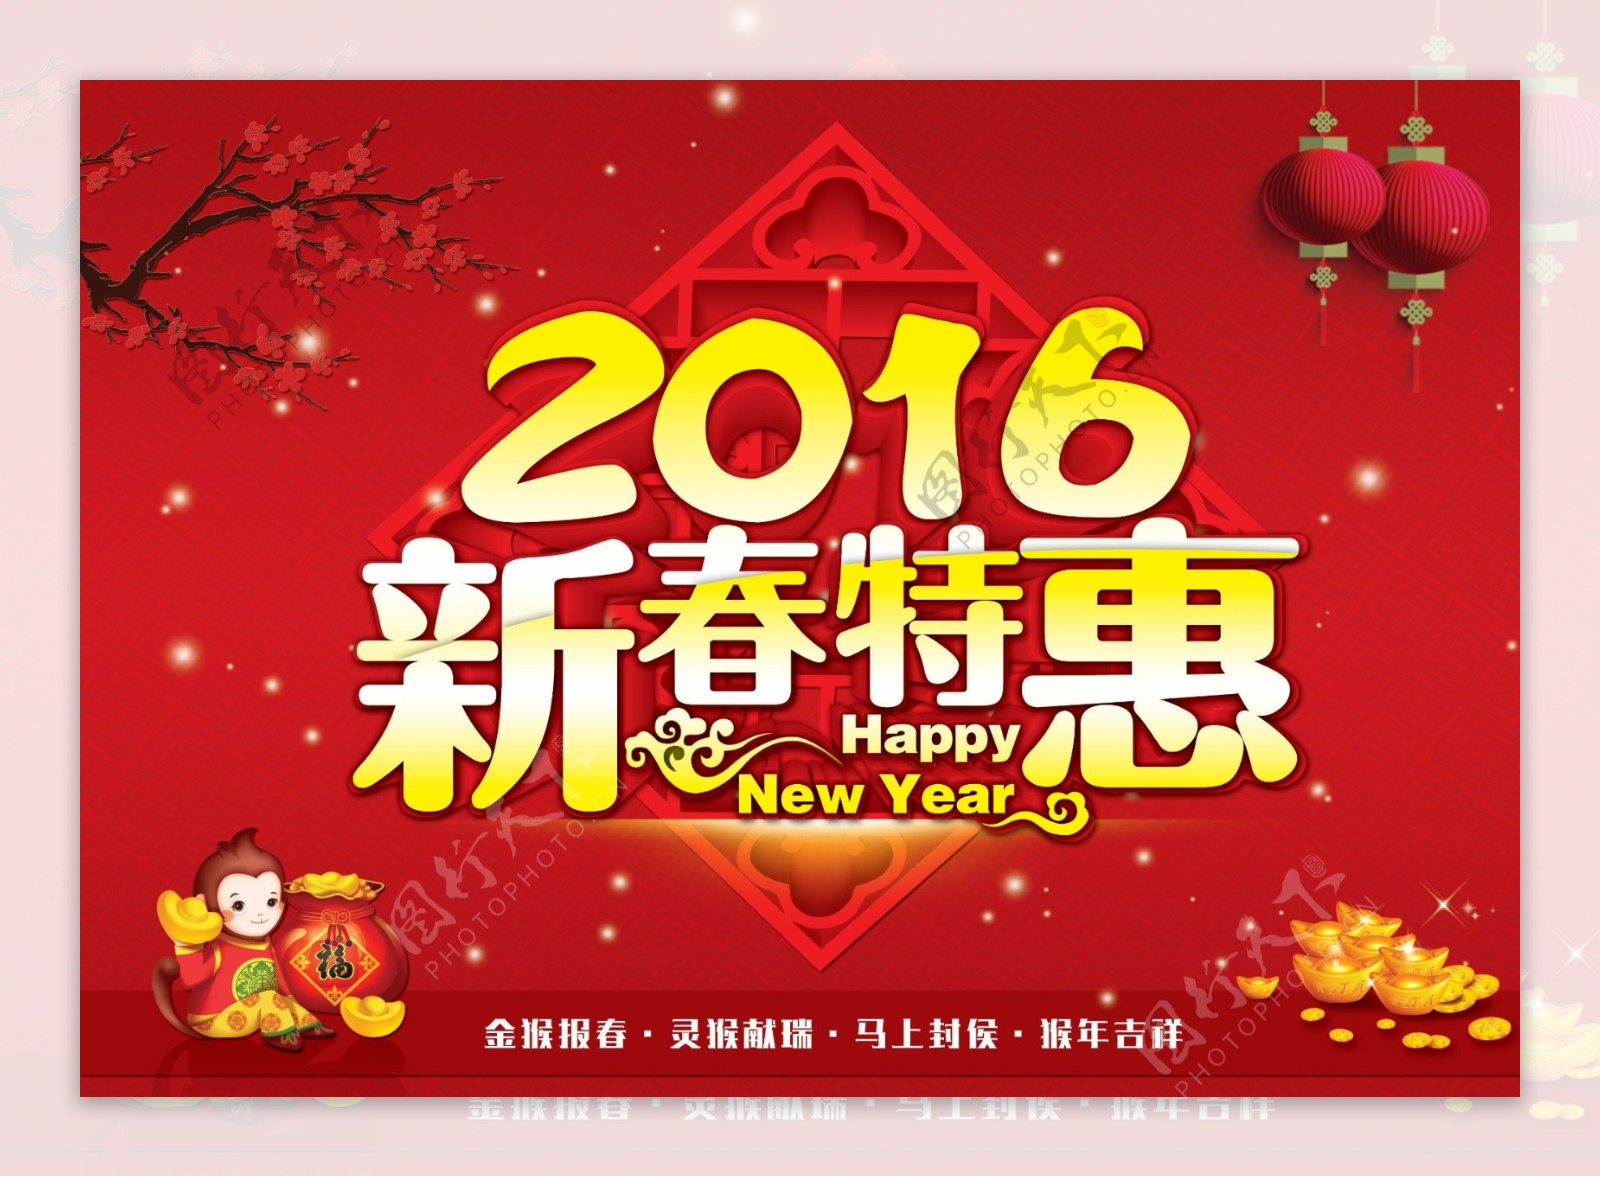 中式节日2016年新春特惠促销海报